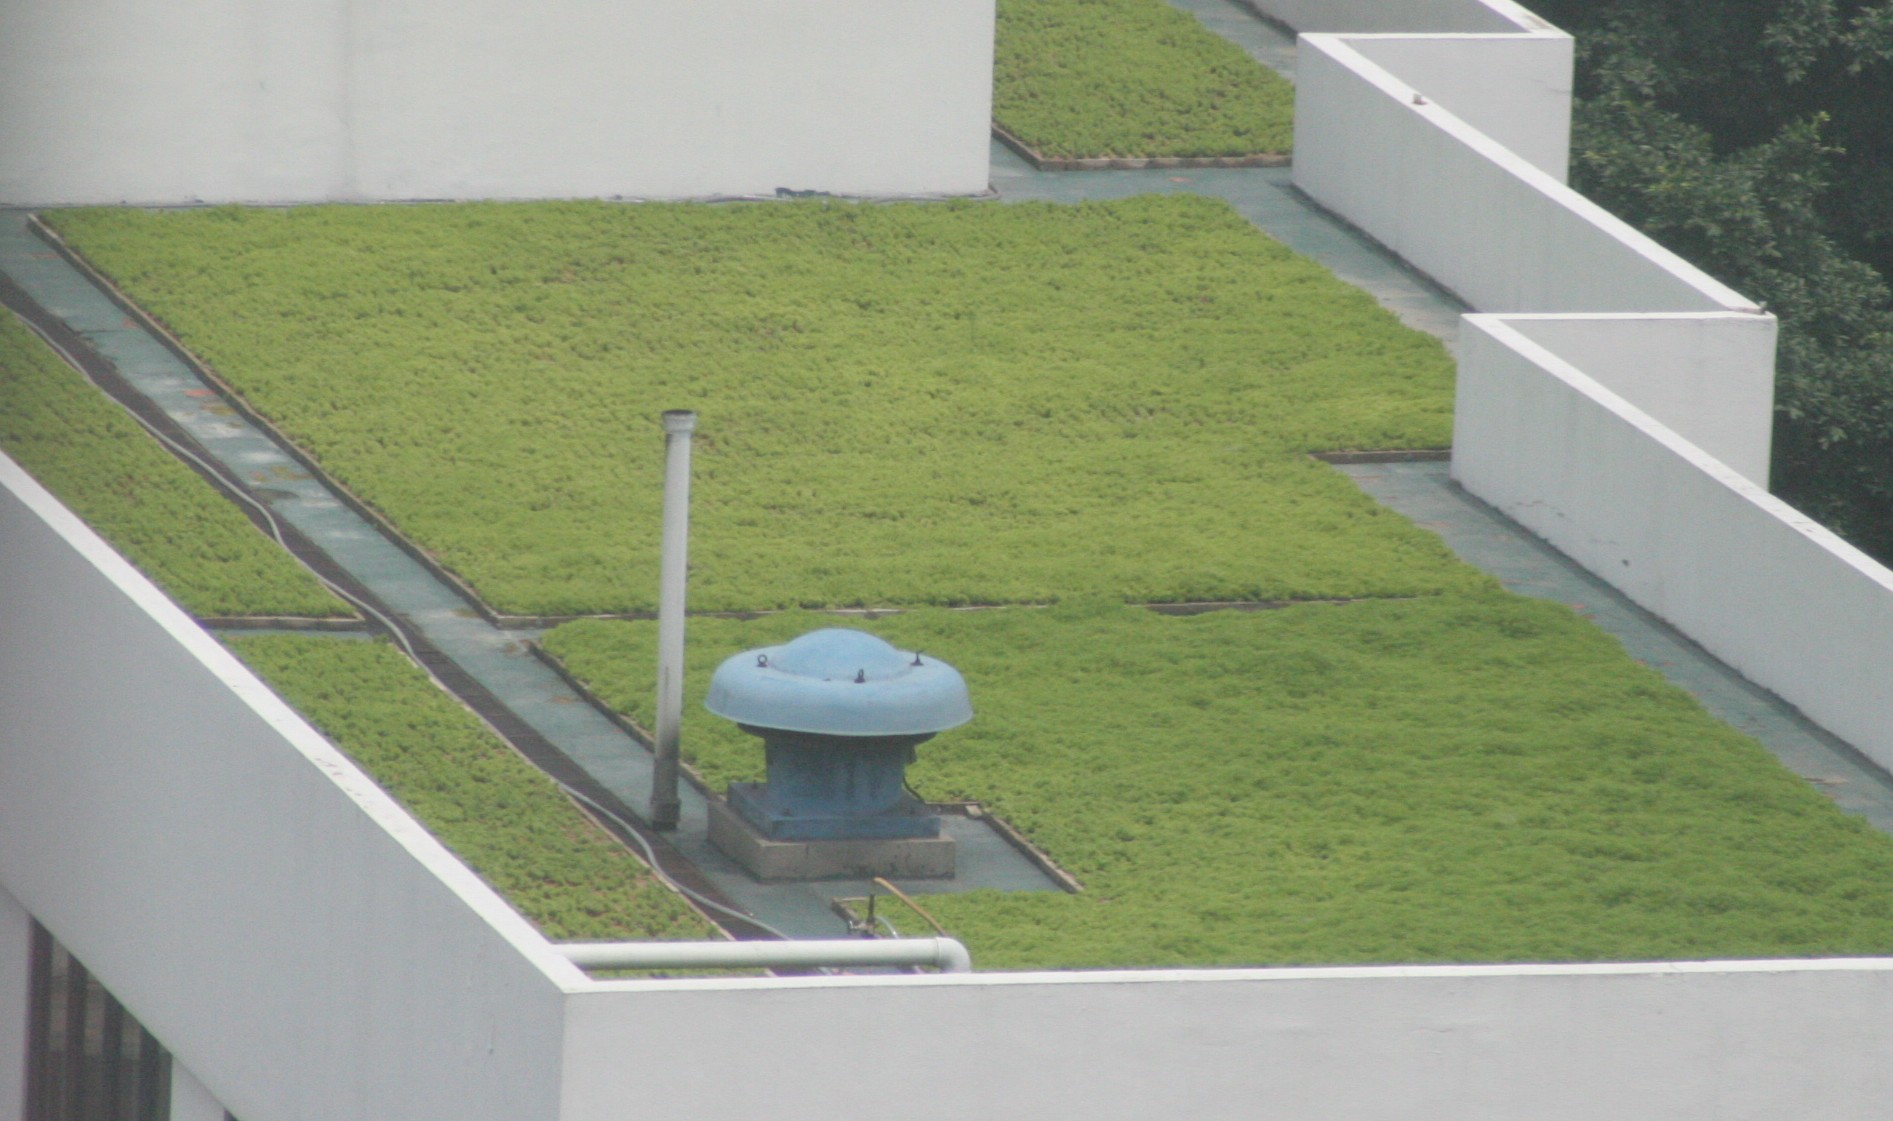 grass roof top